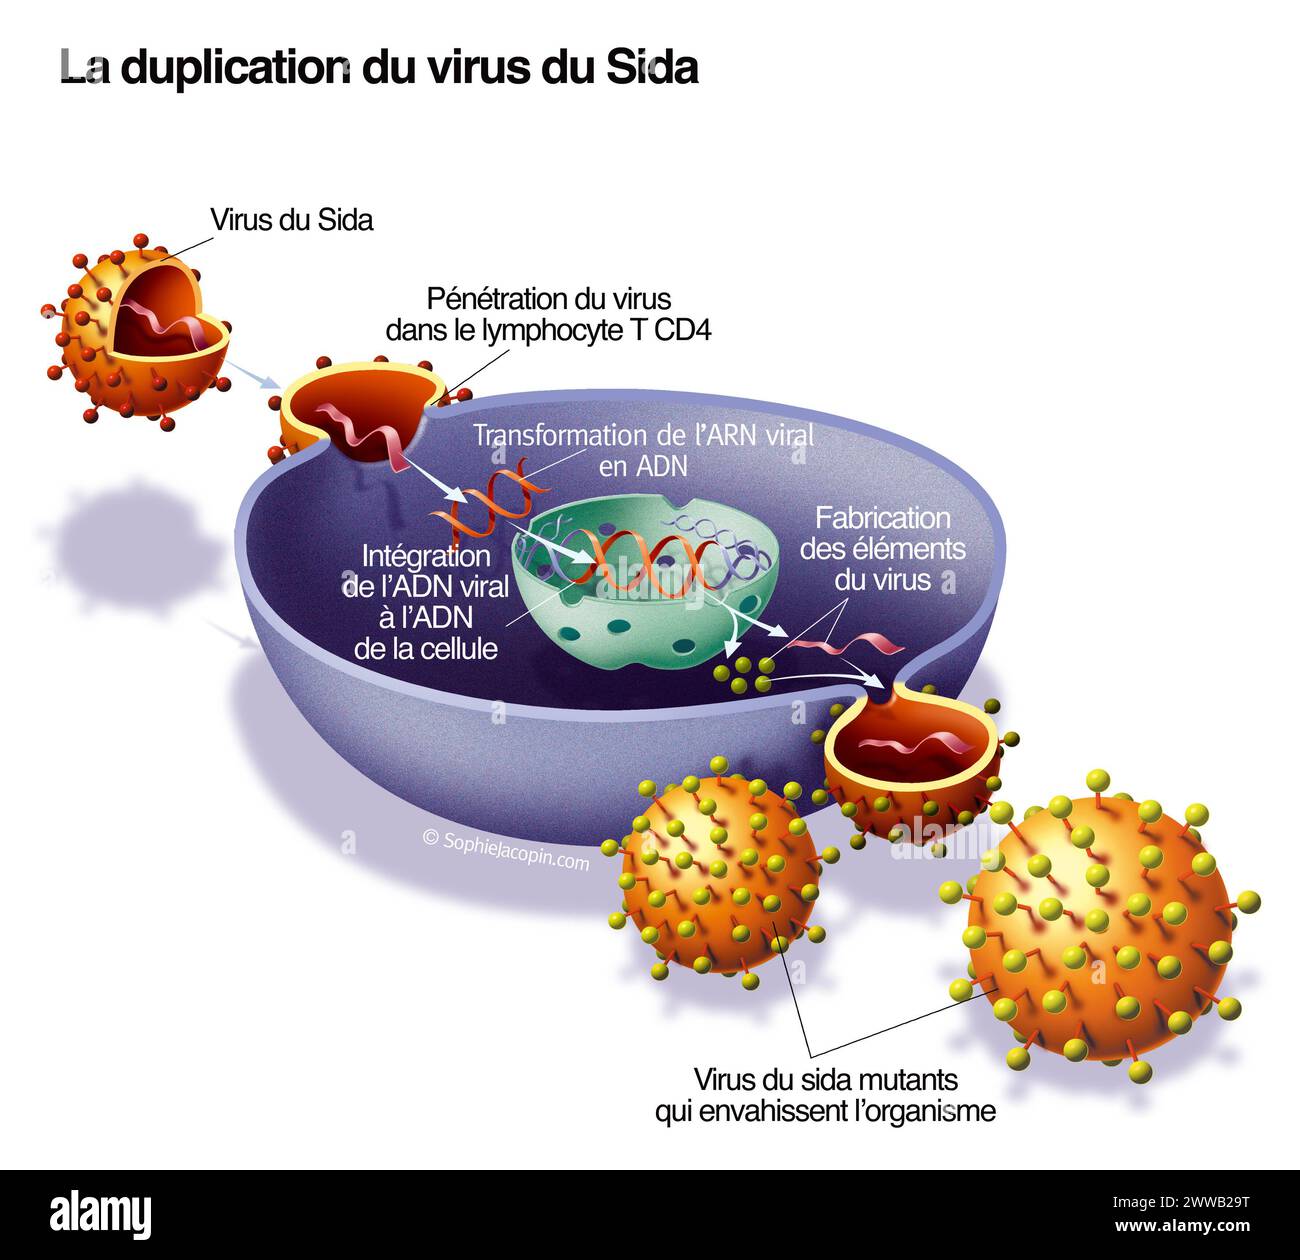 Duplicazione del virus dell'AIDS. Rappresentazione della penetrazione e duplicazione del virus dell'AIDS grazie a una cellula ospite CD4. Foto Stock